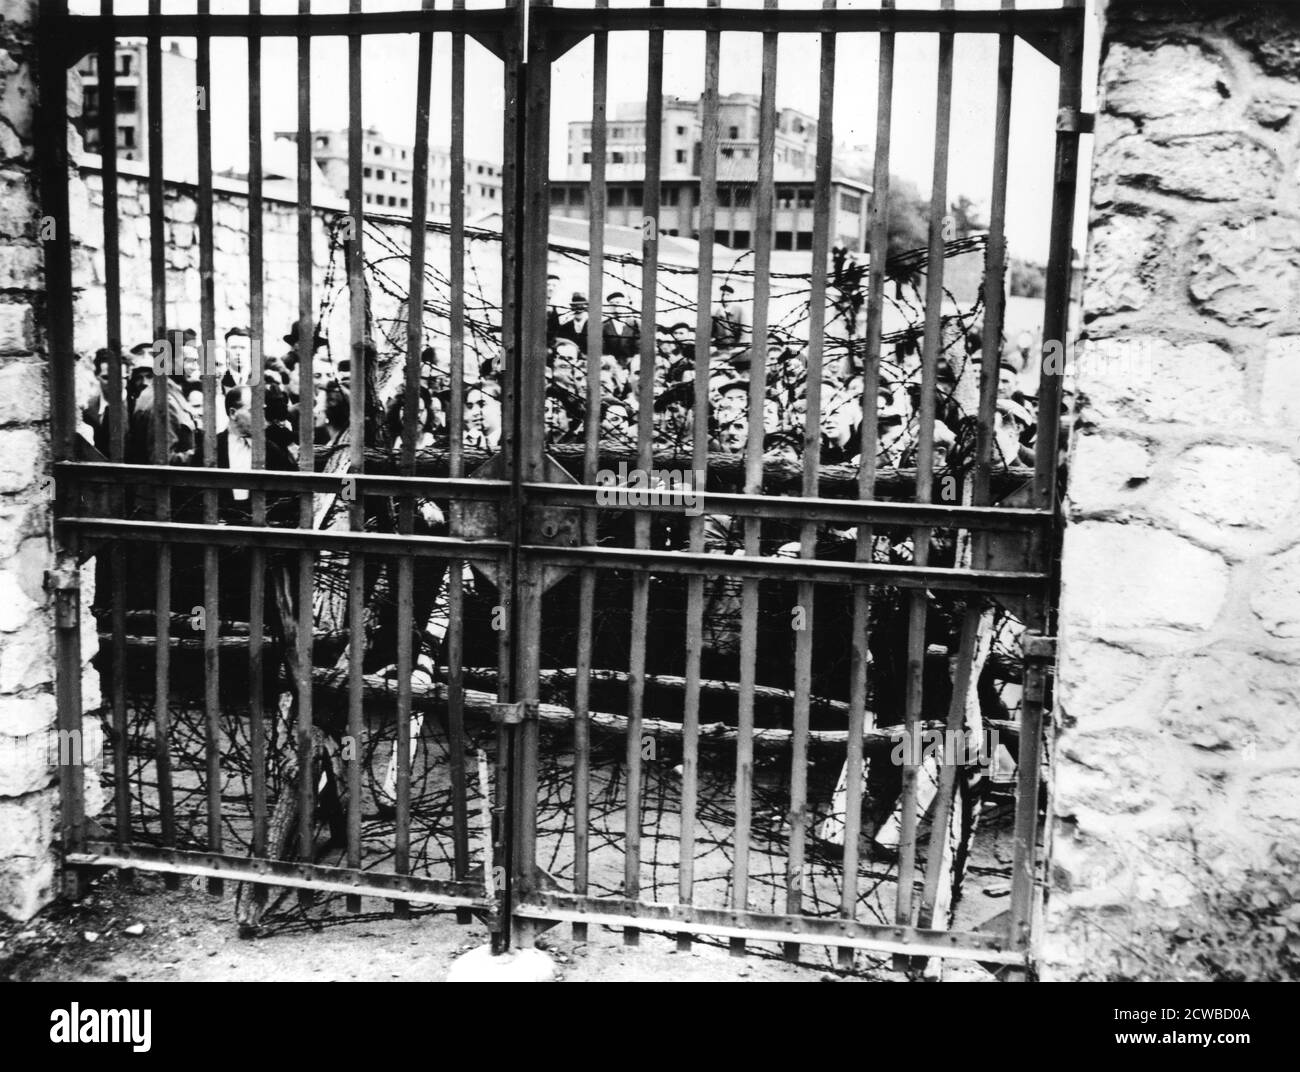 Famiglie in attesa di notizie dei loro cari, Air Ministry, Parigi 1944. La gente attende dietro i cancelli bloccati per i risultati delle prove per identificare i corpi trovati nel seminterrato dell'edificio. Il fotografo è sconosciuto. Foto Stock